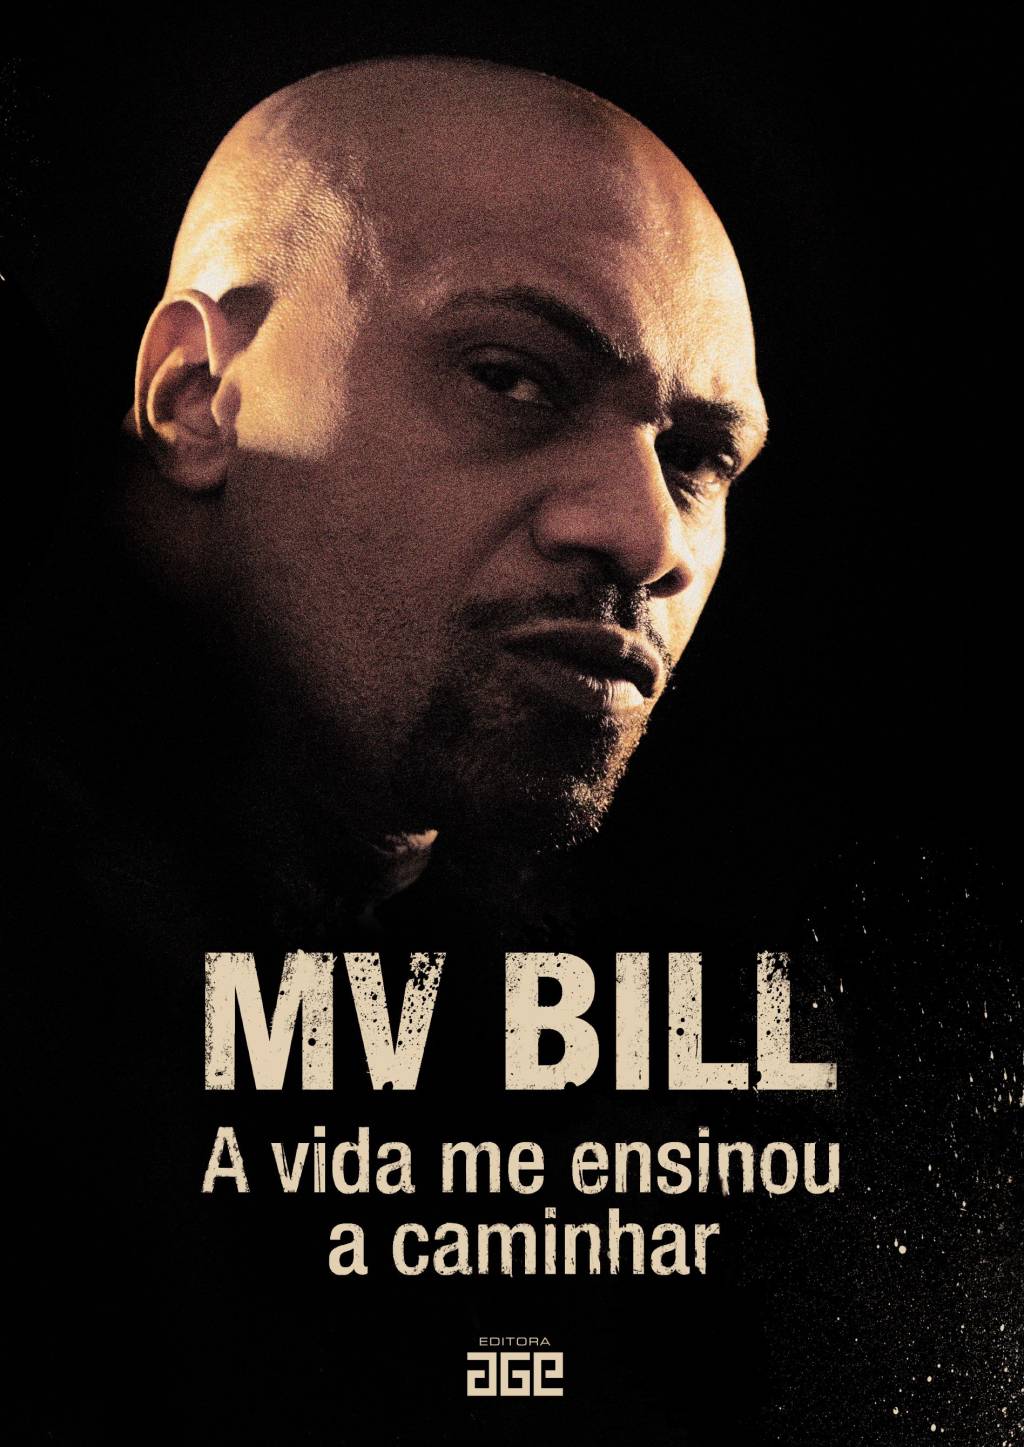 Capa do livro 'A Vida me Ensinou a Caminhar', do rapper carioca MV Bill.